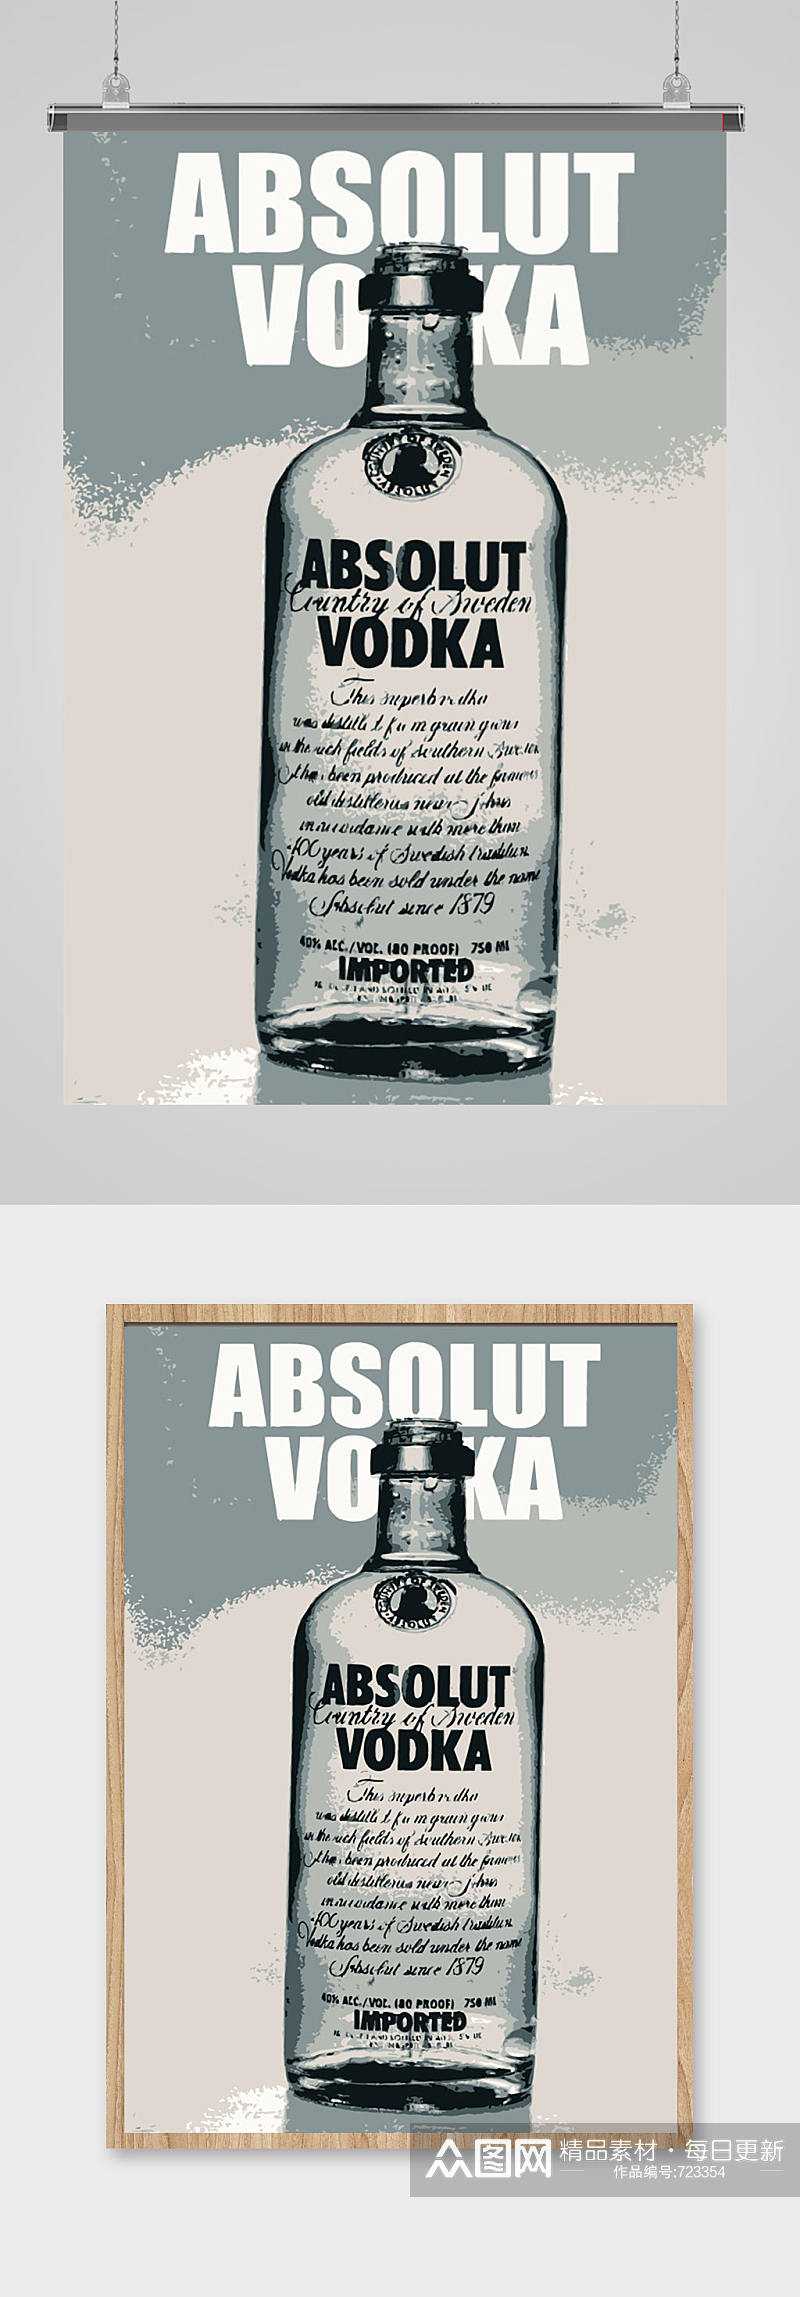 精美酒瓶海报宣传矢量素材素材